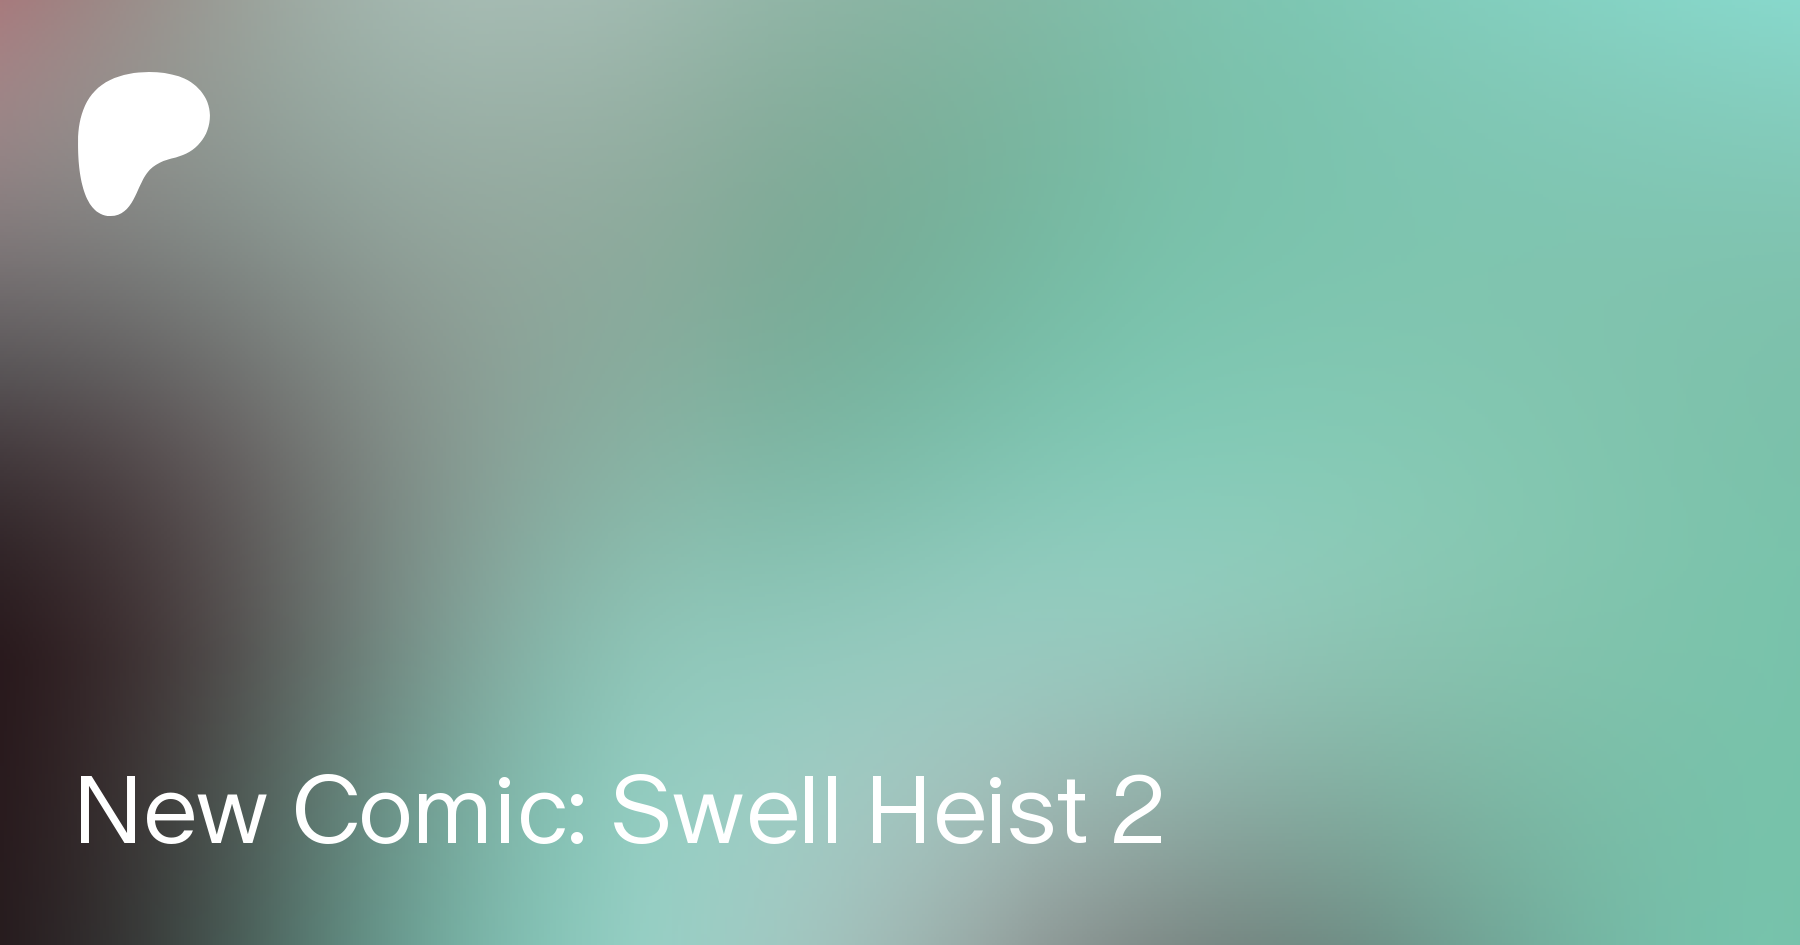 Swell heist 2